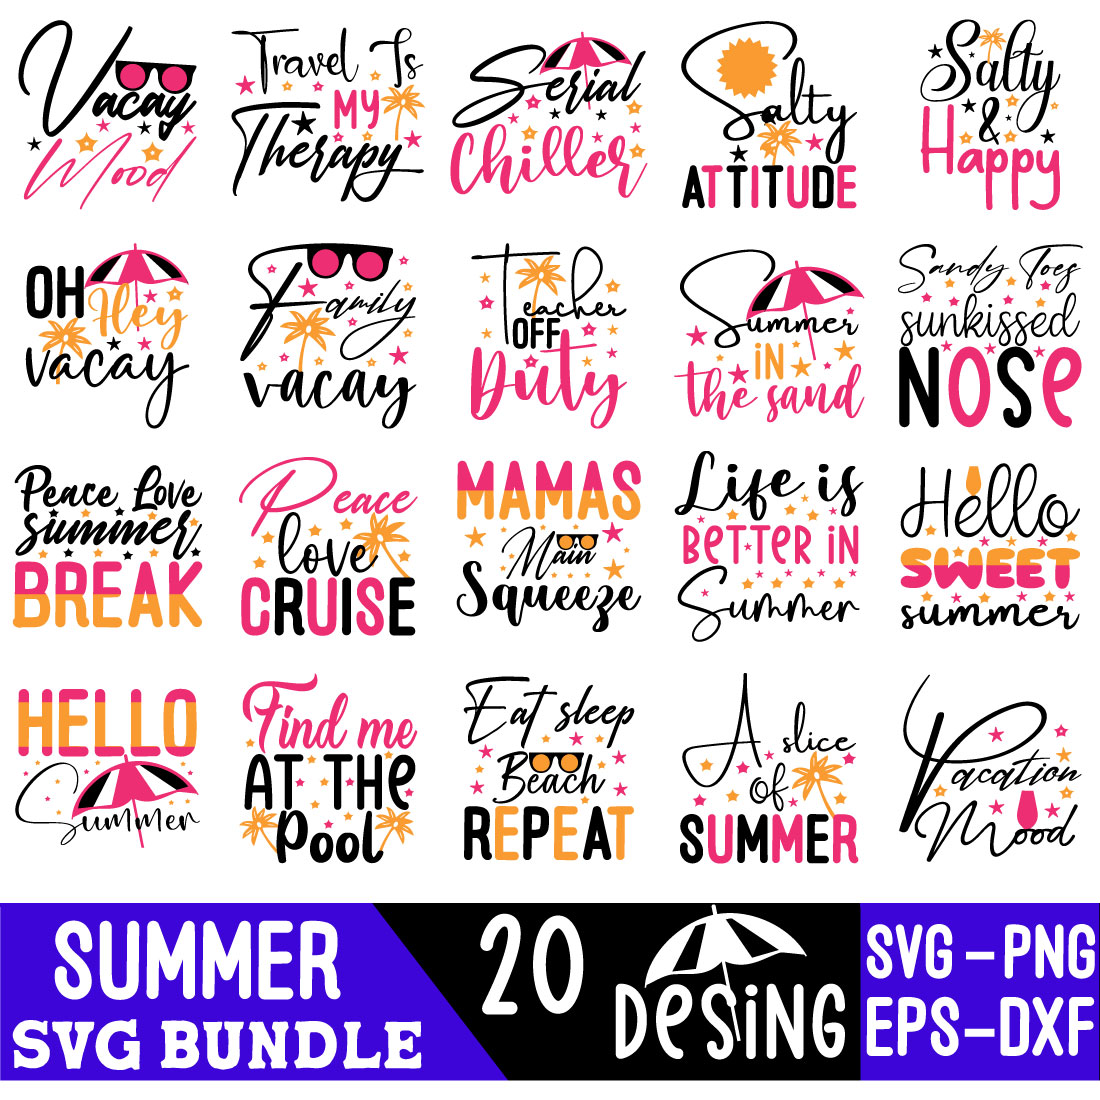 Summer Svg Bundle cover image.